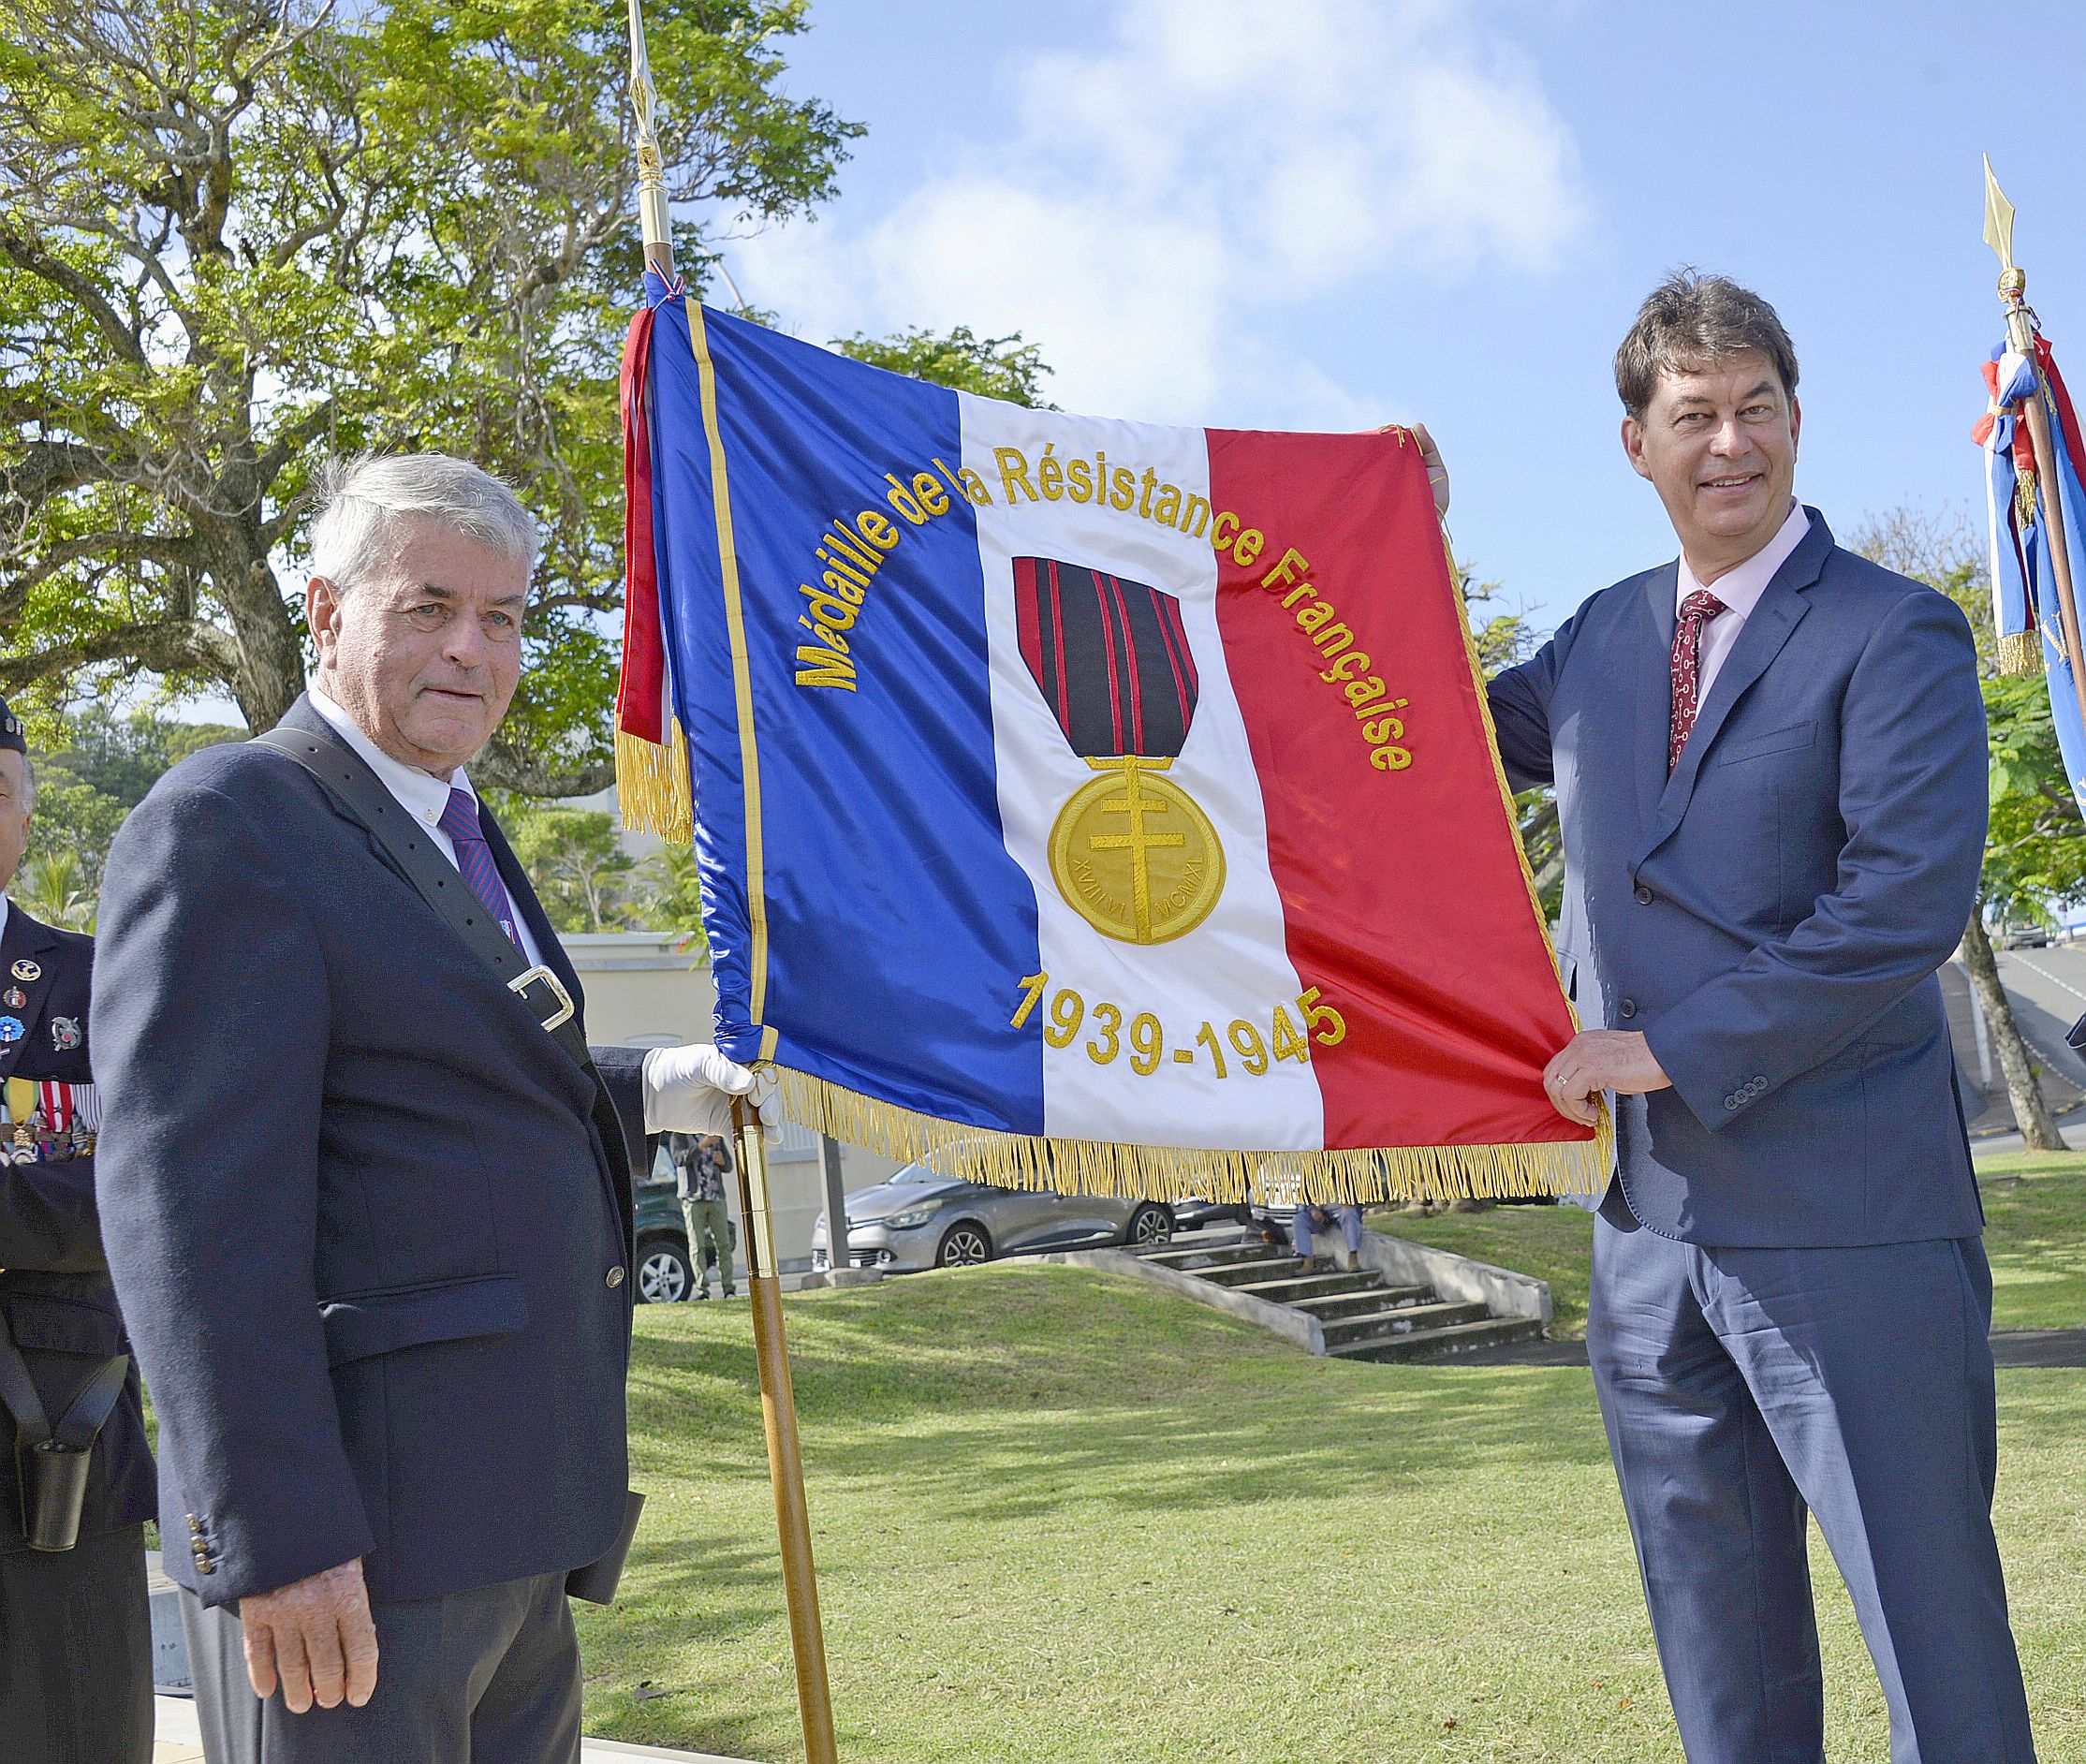 Le porte-drapeau Jean-Michel Porcheron et Thierry Santa, président du gouvernement, ont présenté le drapeau de la Résistance de la Nouvelle-Calédonie. Photo Thierry Perron